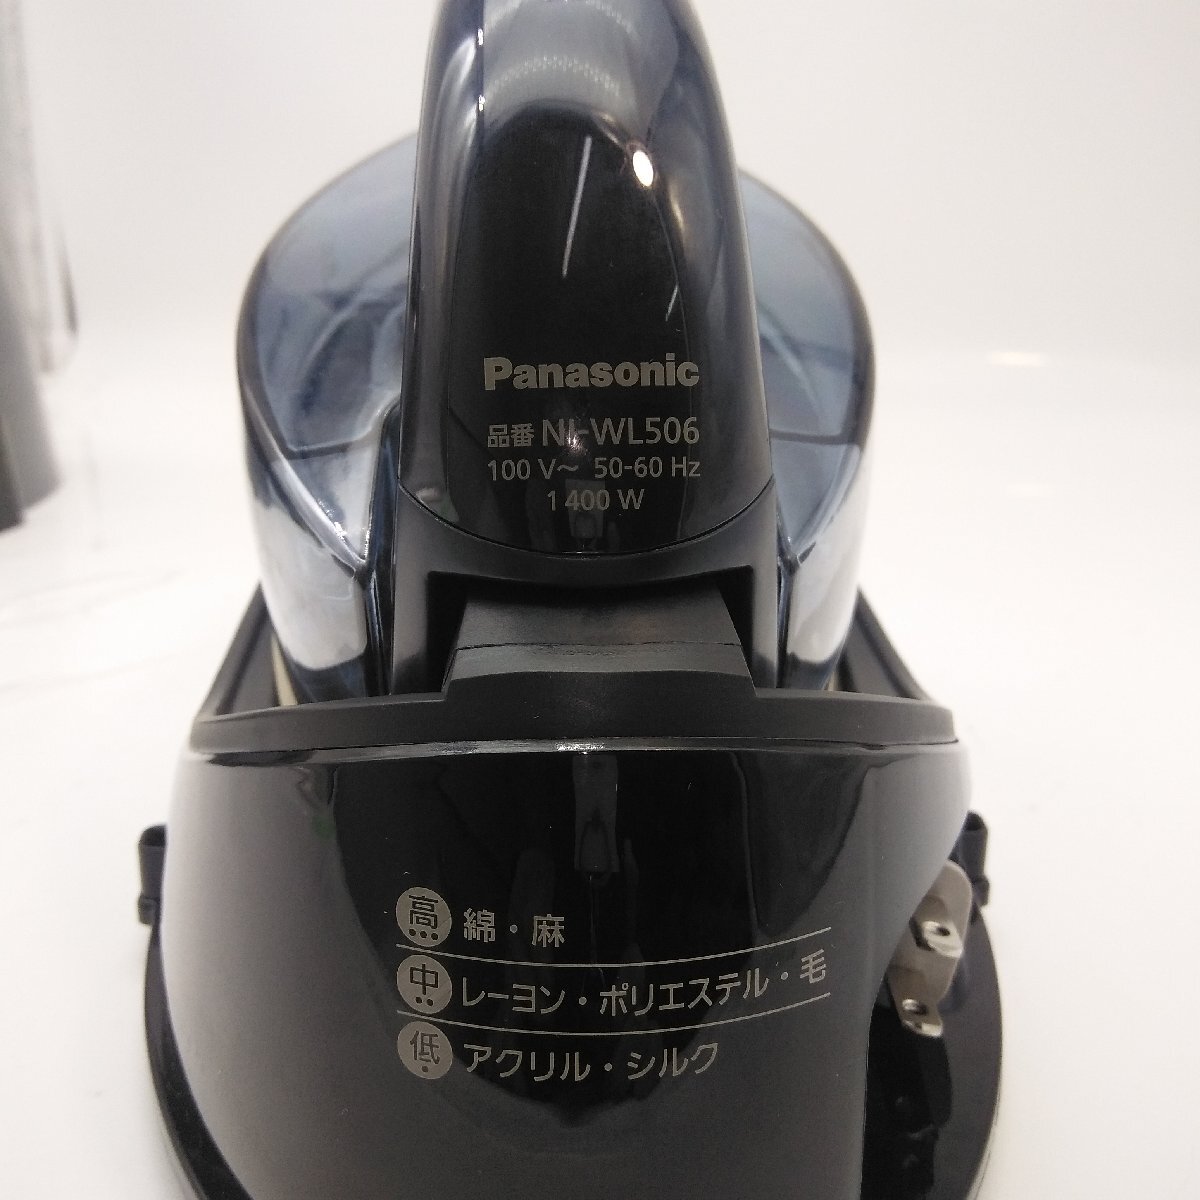 5131 [ рабочий товар ]Panasonic Panasonic CaRuRu NI-WL506 беспроводной паровой утюг 2021 год производства чёрный цвет 